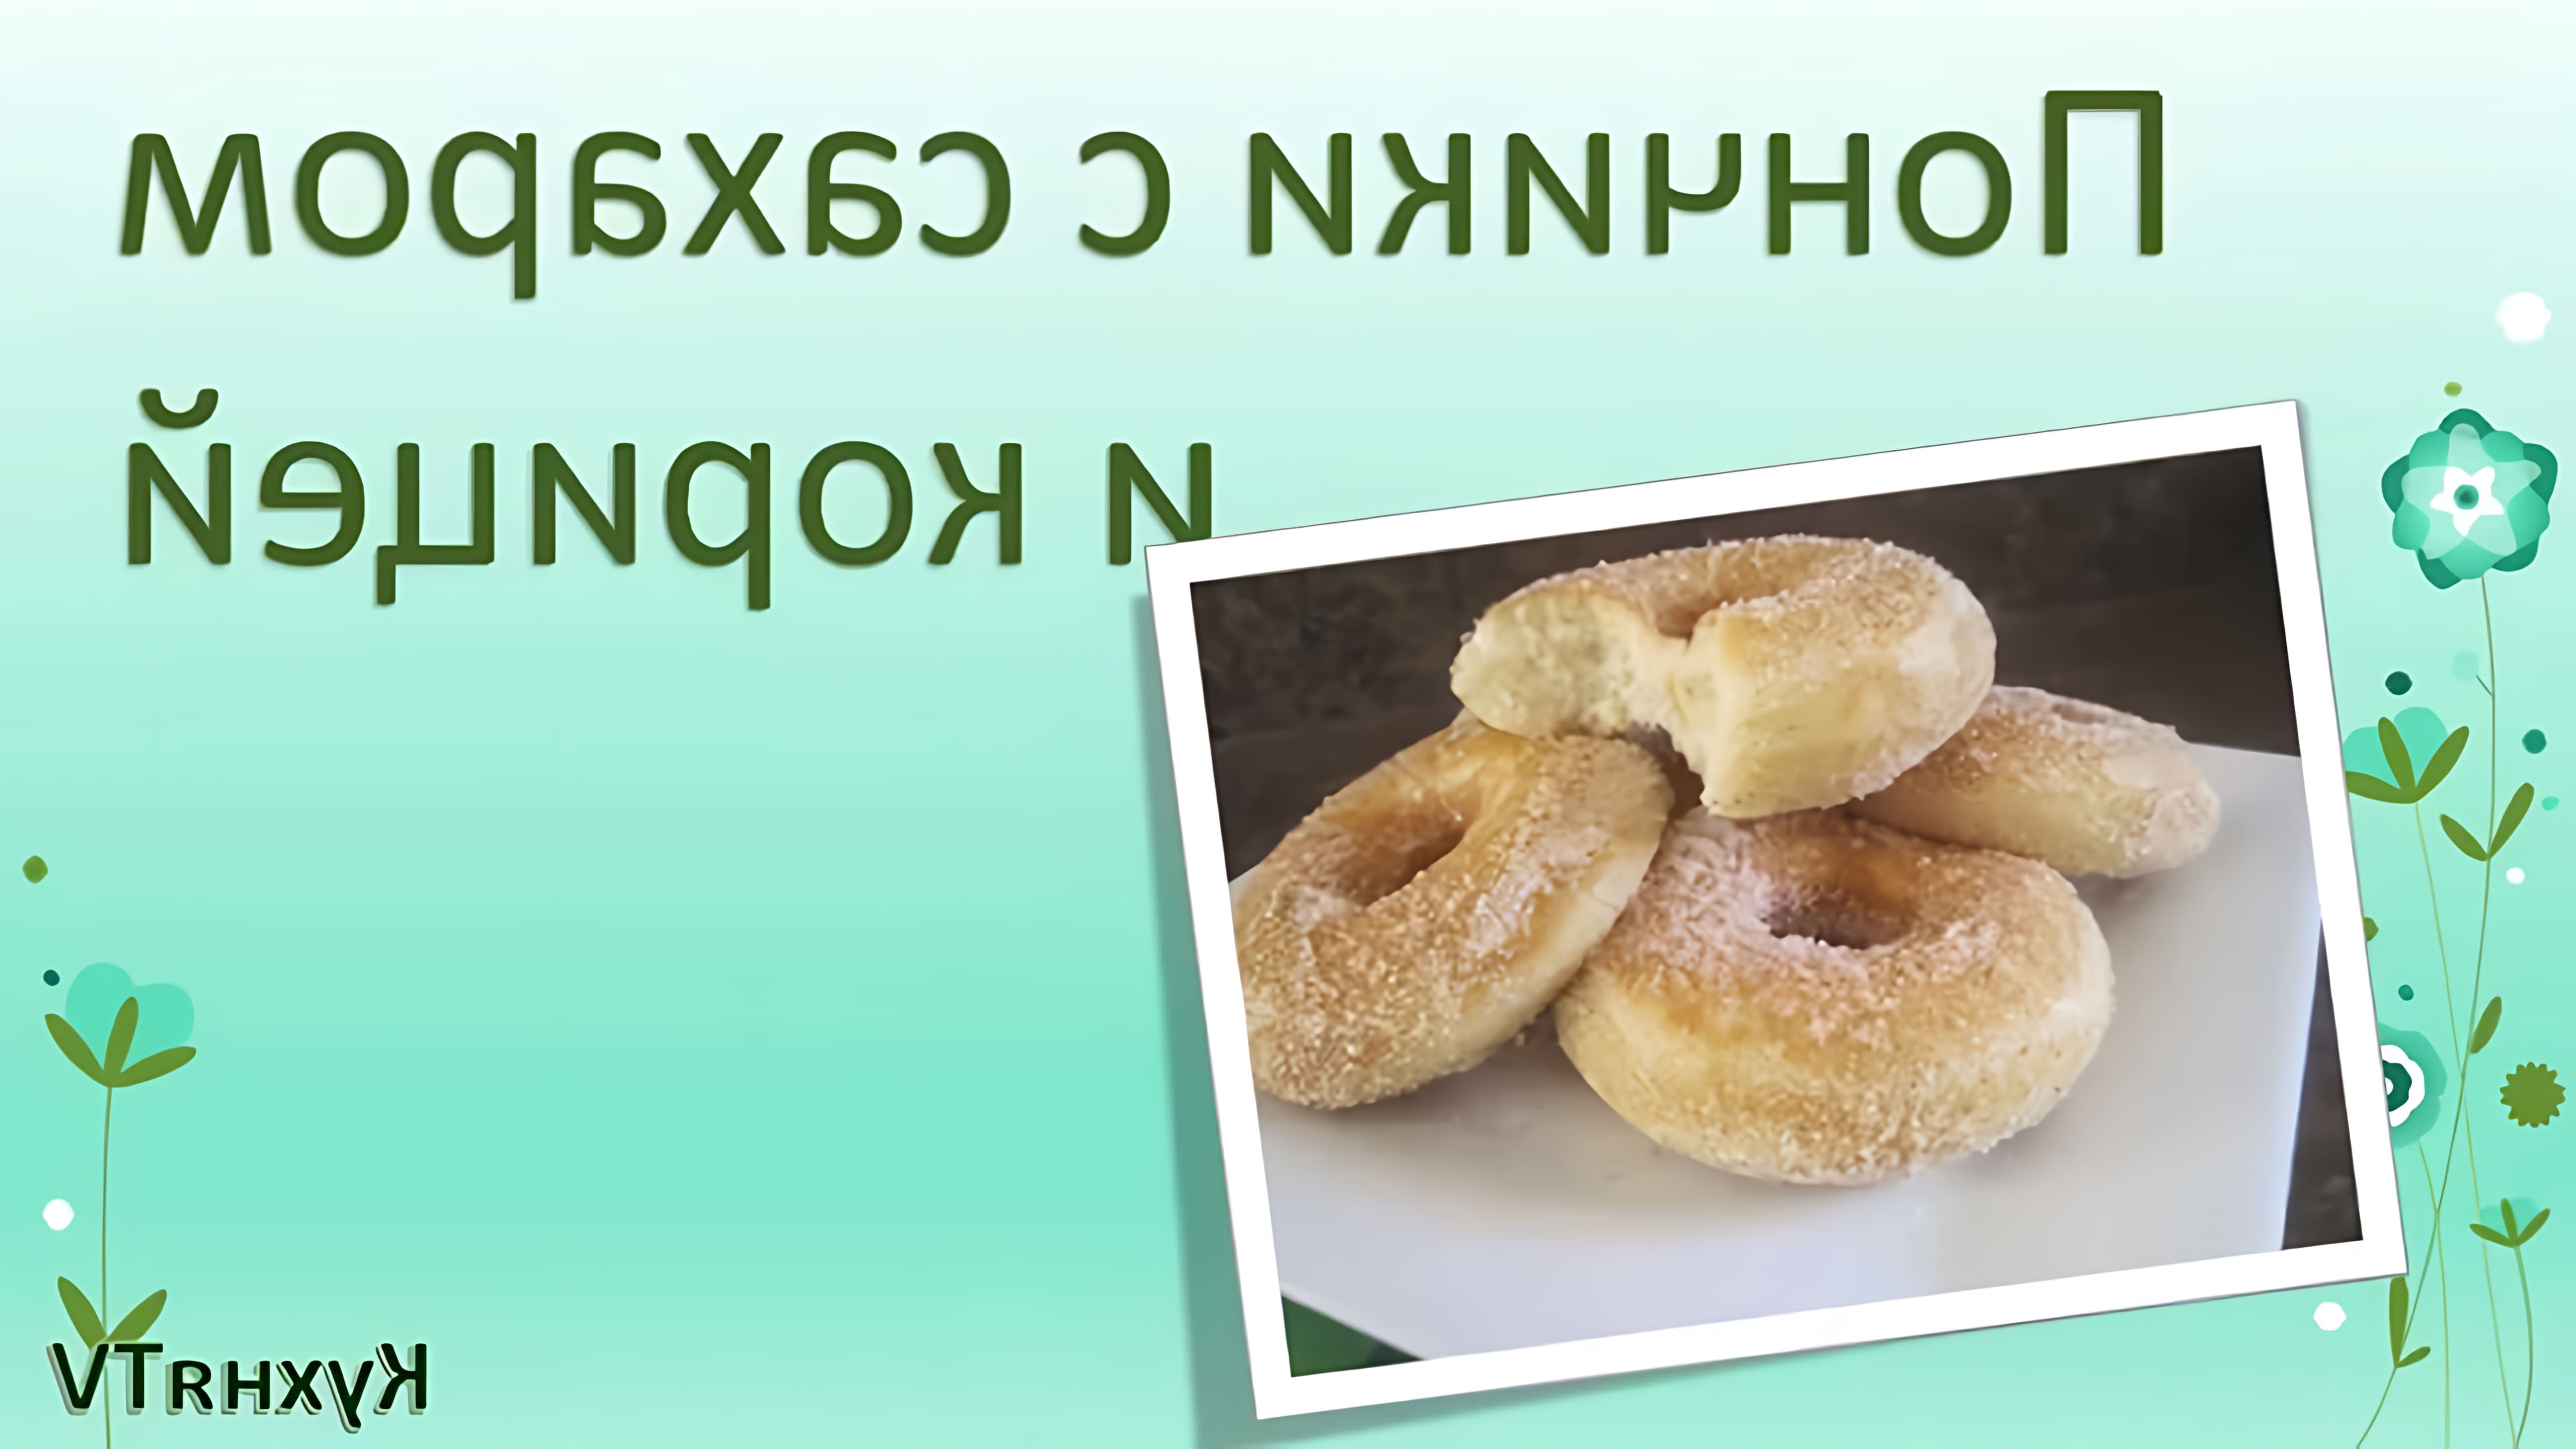 В этом видео-ролике будет представлен рецепт приготовления пончиков с сахаром и корицей